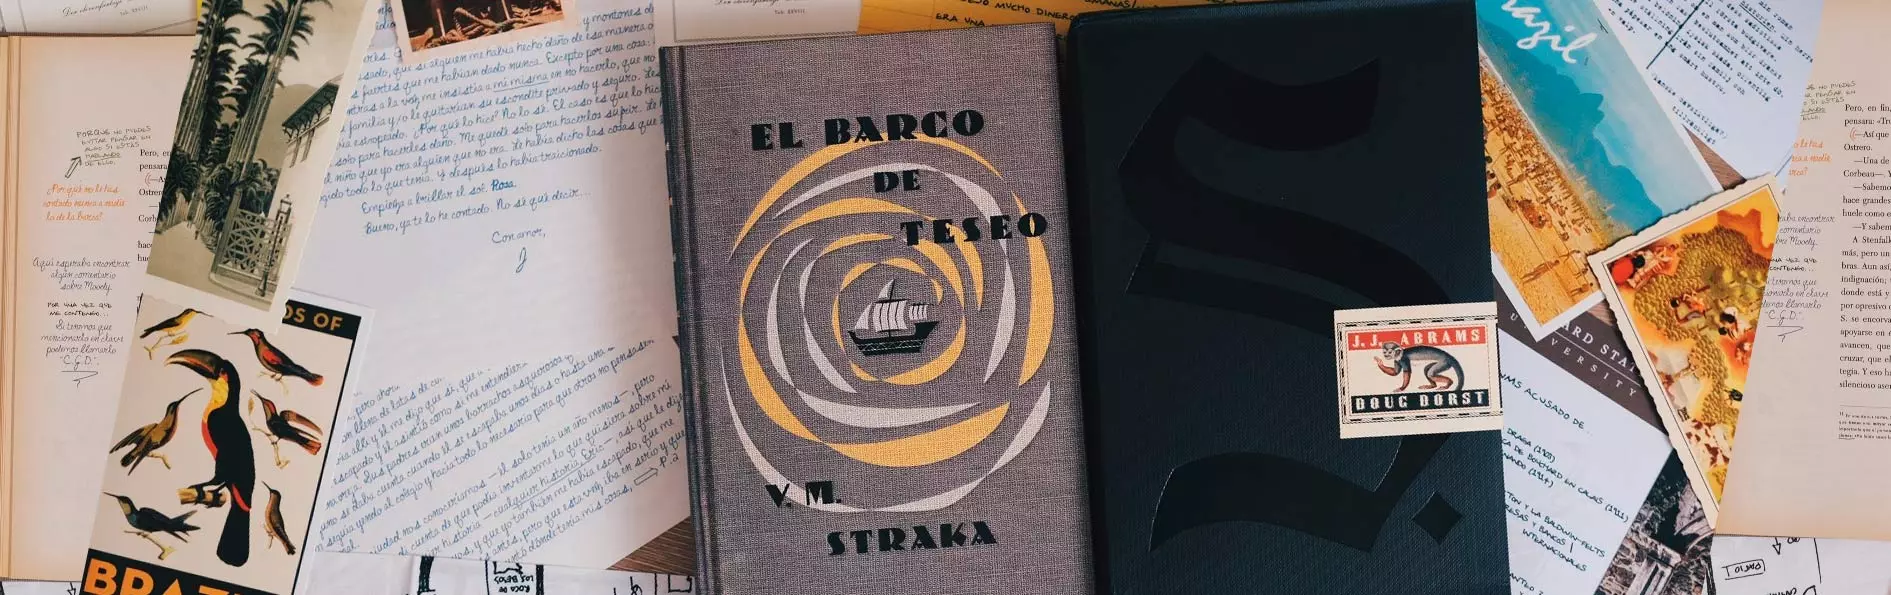 El libro de J.J. Abrams se publica en España el 30 de octubre